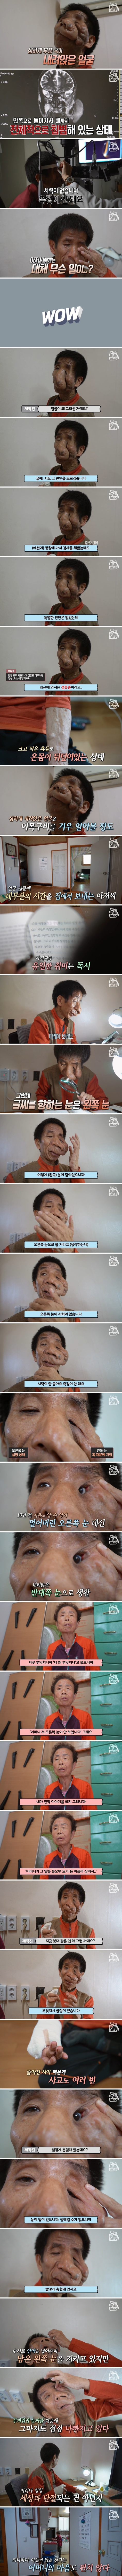 [1부] 얼굴을 뒤덮은 혹, 신경섬유종을 앓고 있는 김진욱 씨의 사연